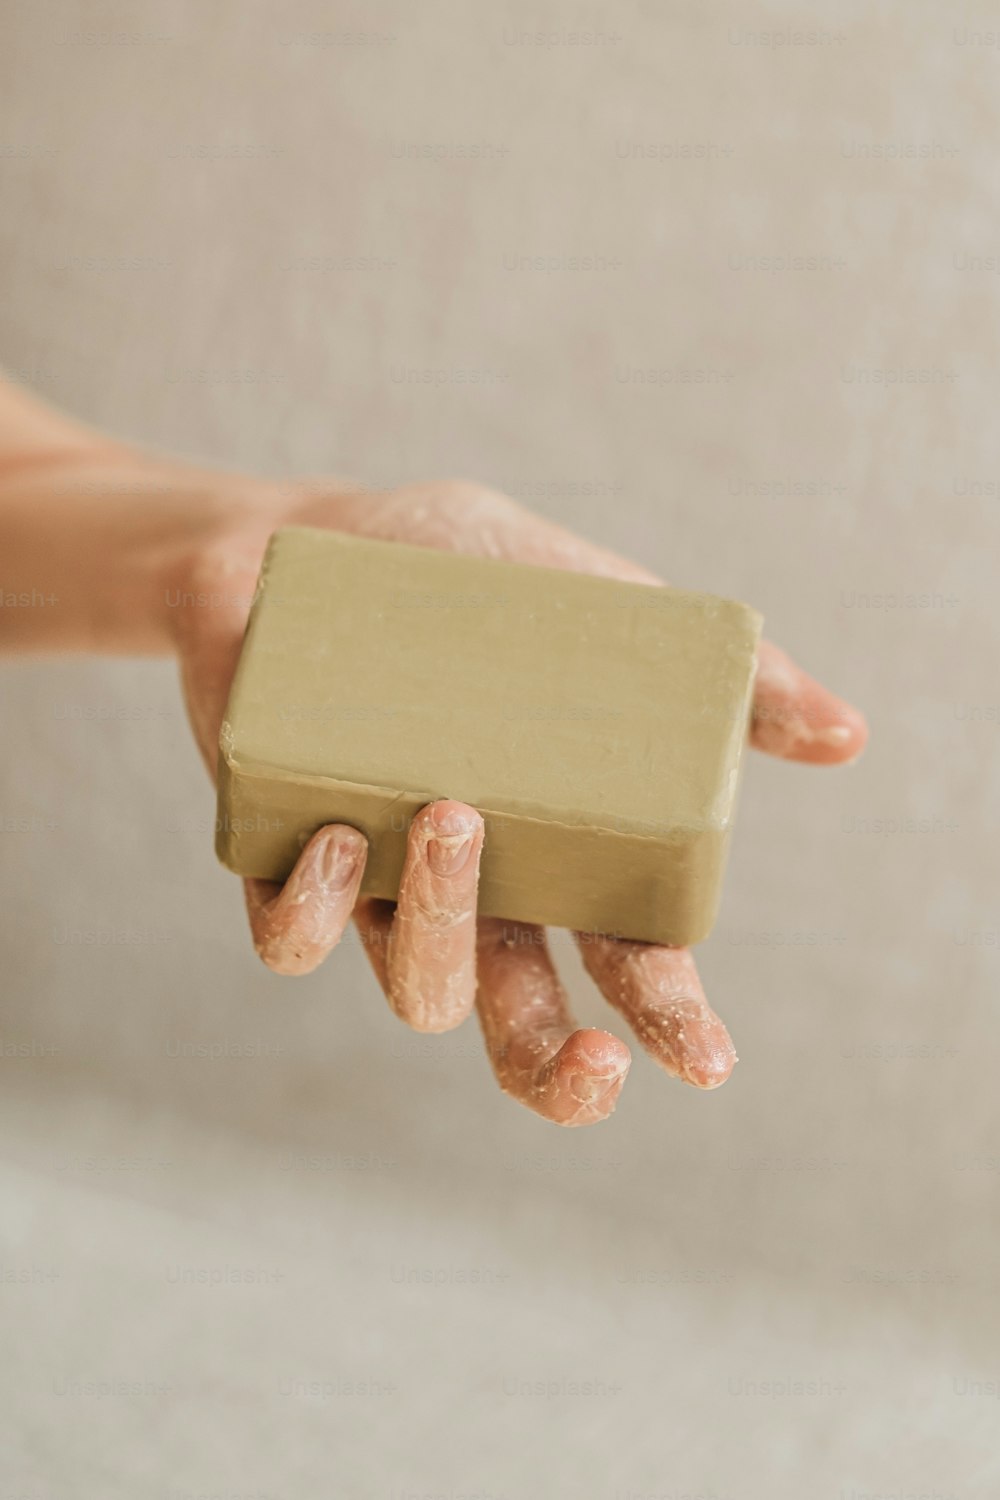 una persona sosteniendo una barra de jabón en la mano